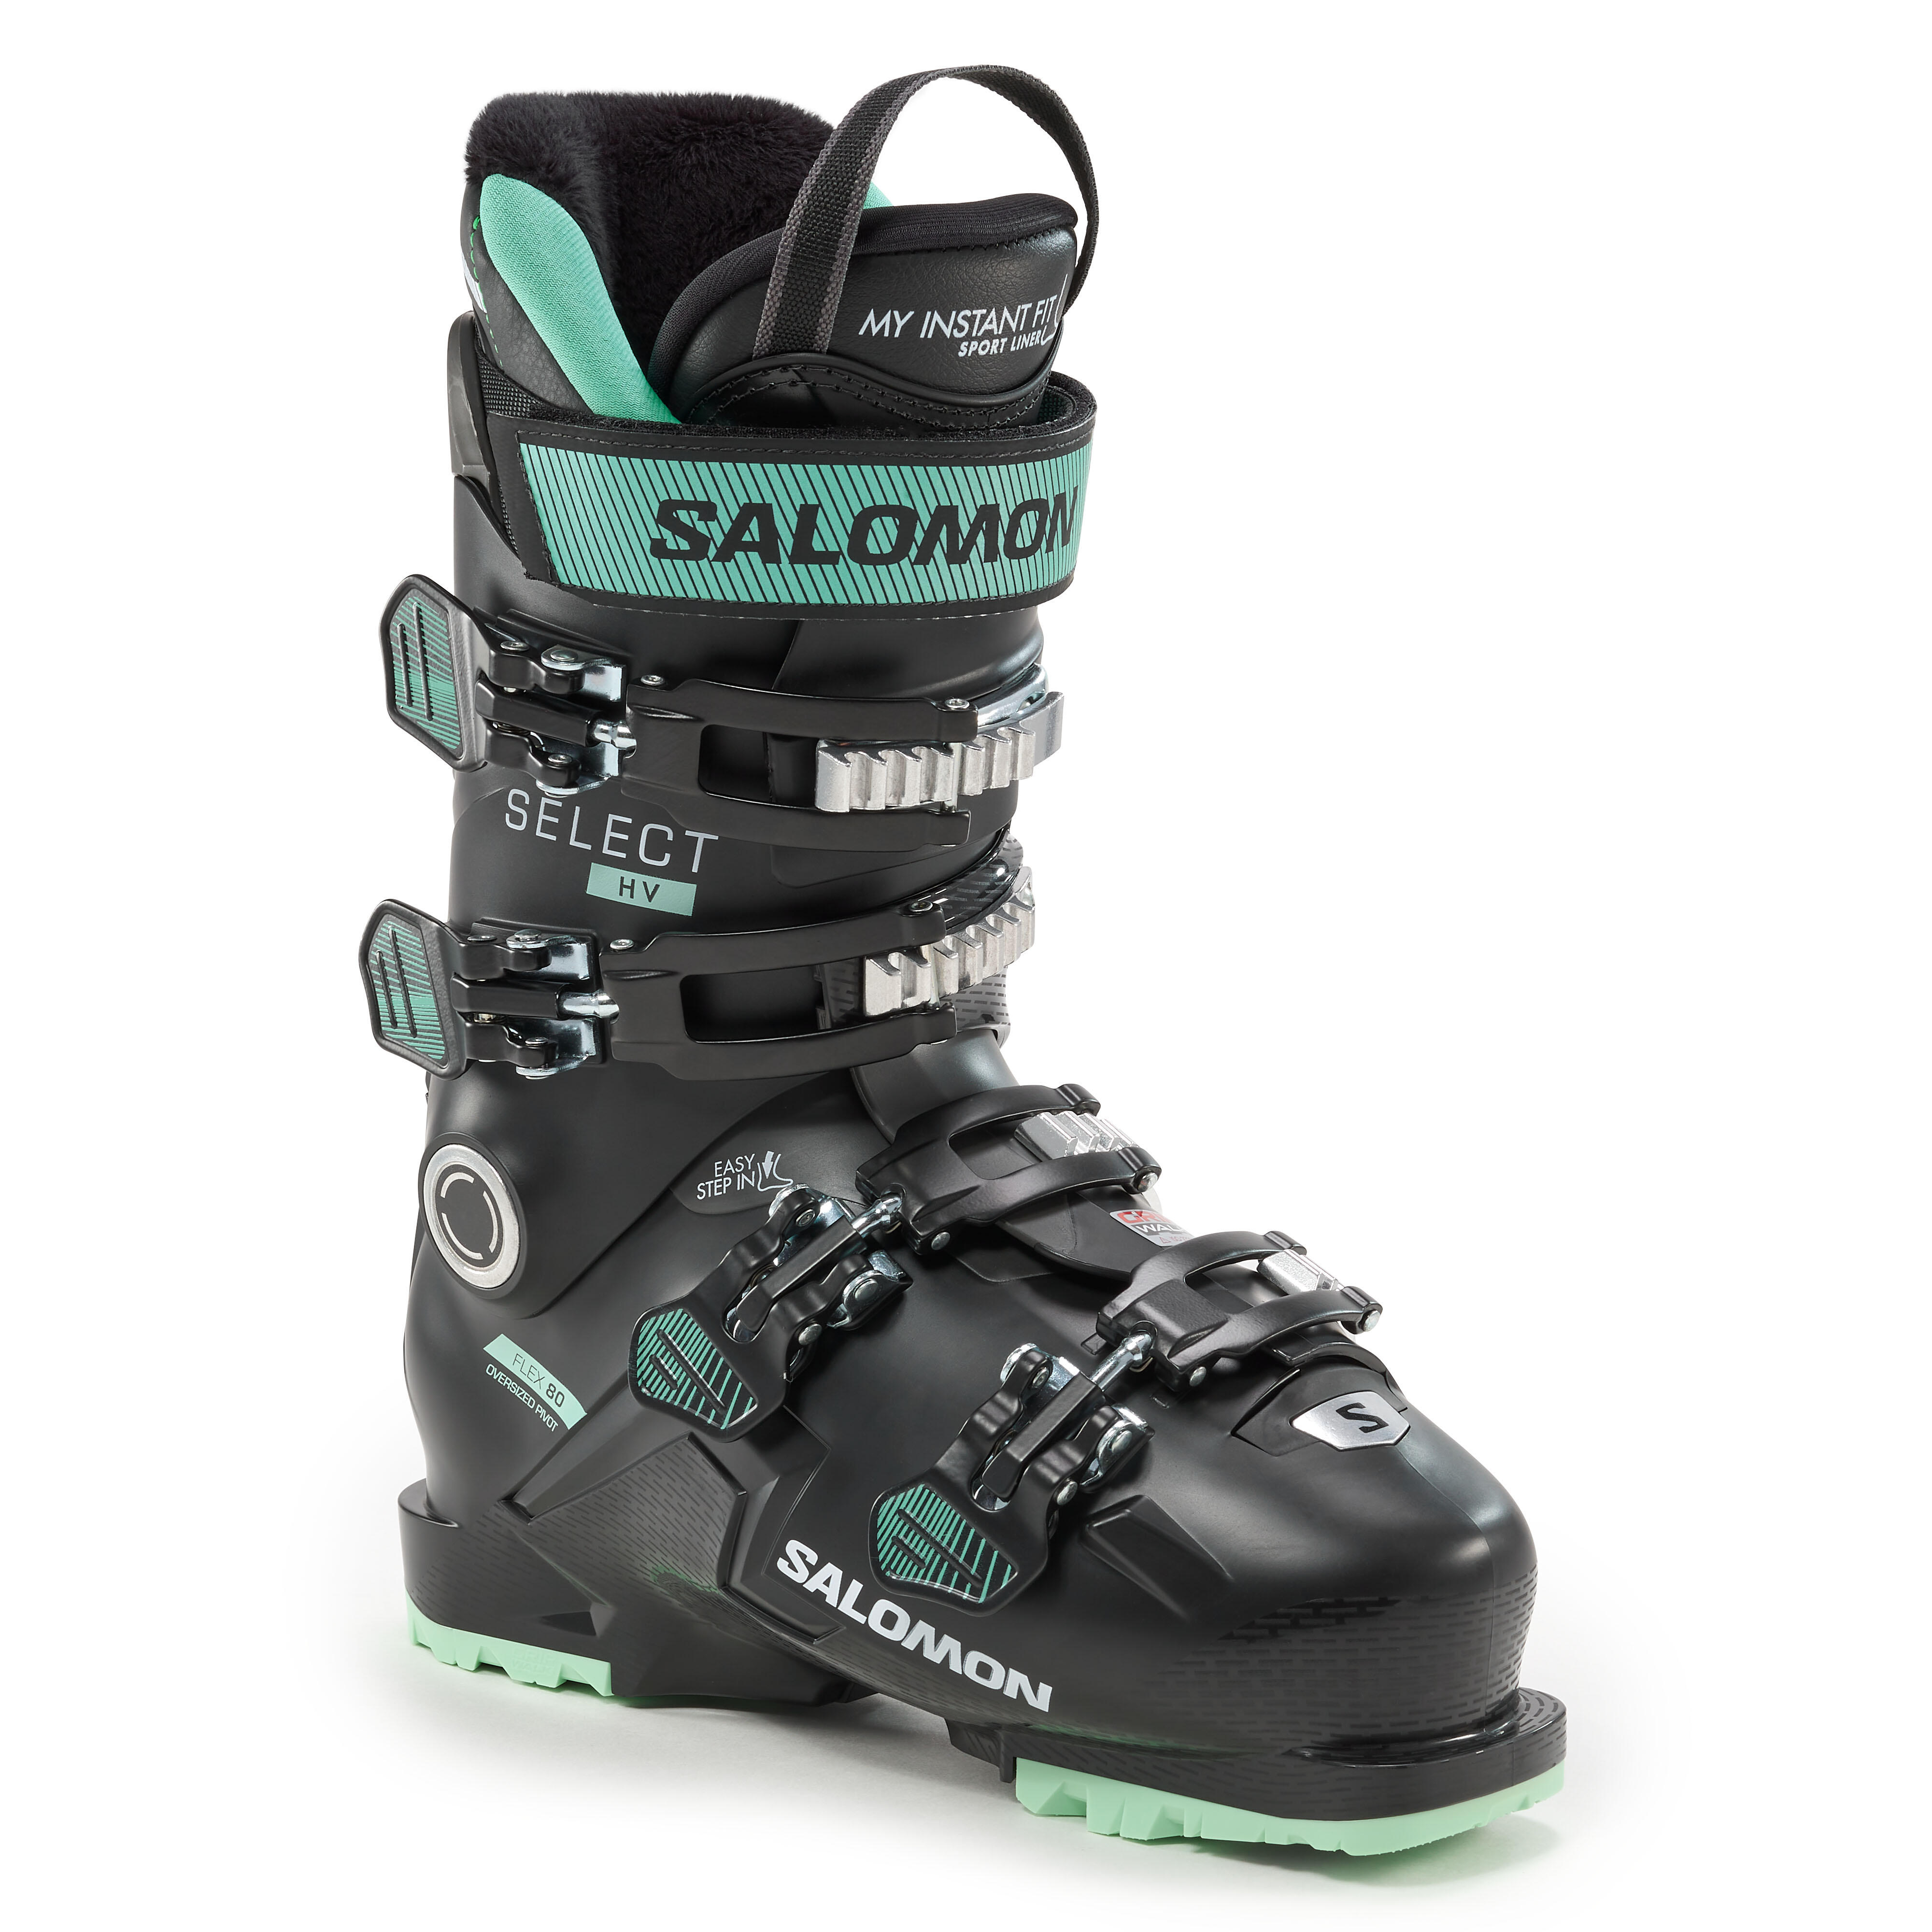 Salomon Women's Ski Boot - Select Hv 80 Gw